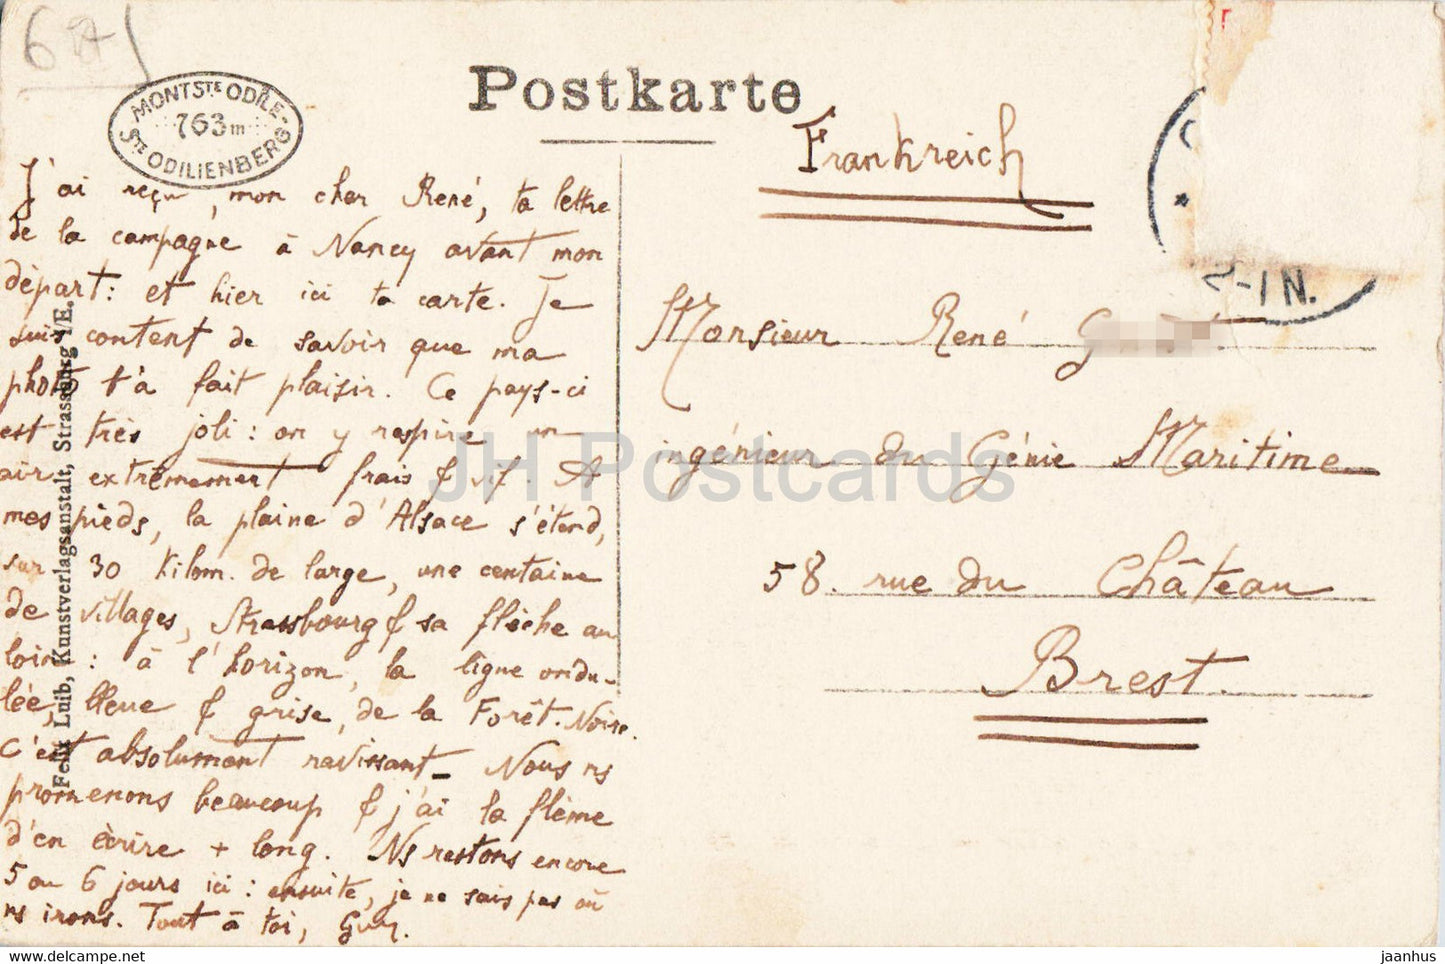 Sankt Odilienkloster - Couvent de Sainte Odile - old postcard - France - used